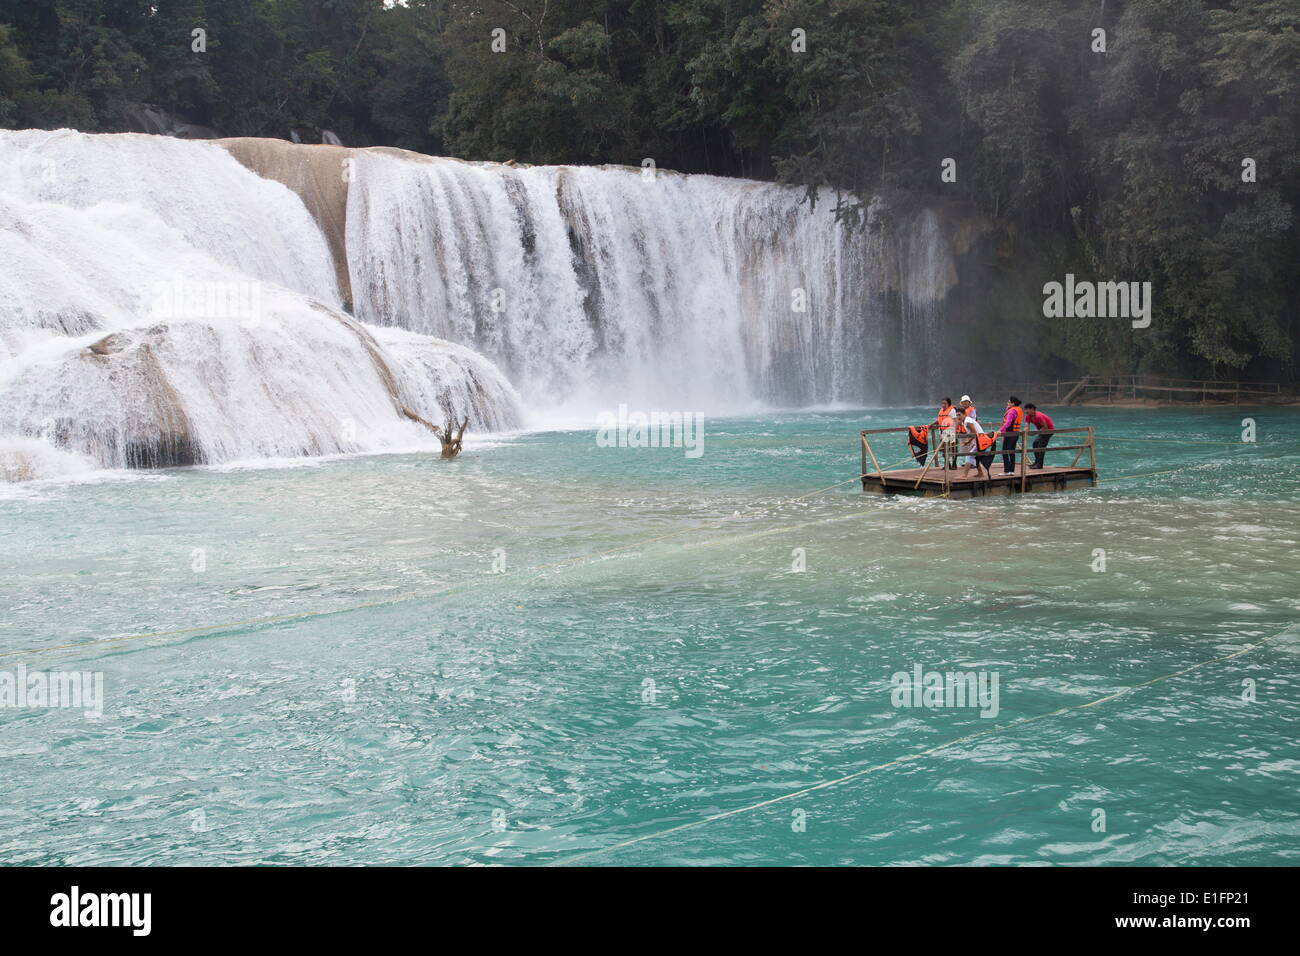 Churning cascades and tourists on raft, Rio Tulija, Parque Nacional de Agua Azul, near Palenque, Chiapas, Mexico, North America Stock Photo